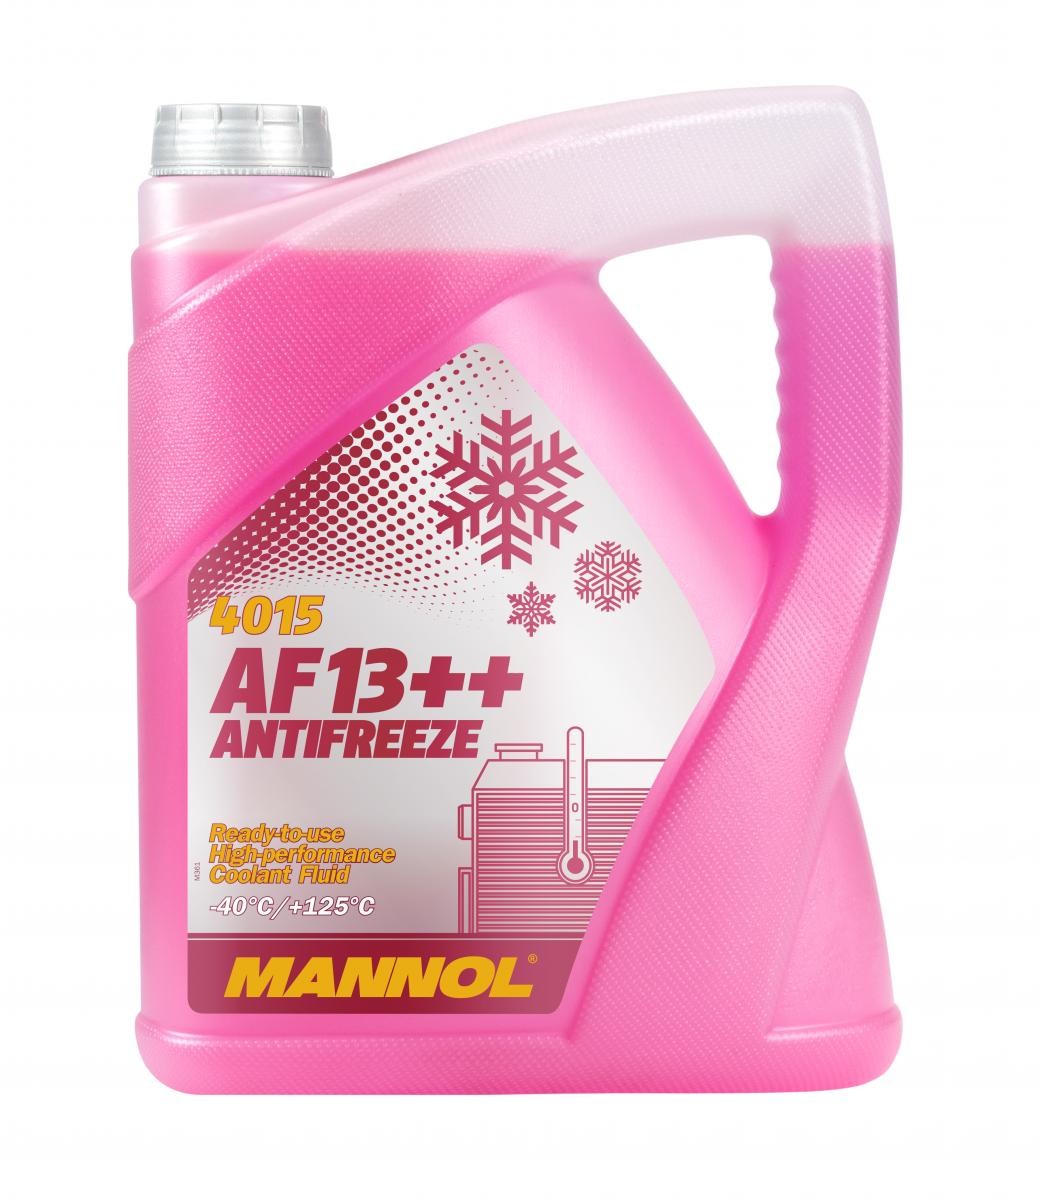 Kupite MANNOL Sredstvo proti zmrzovanju hladilne vode (antifriz) MN4015-5 za SCANIA po zmerni ceni